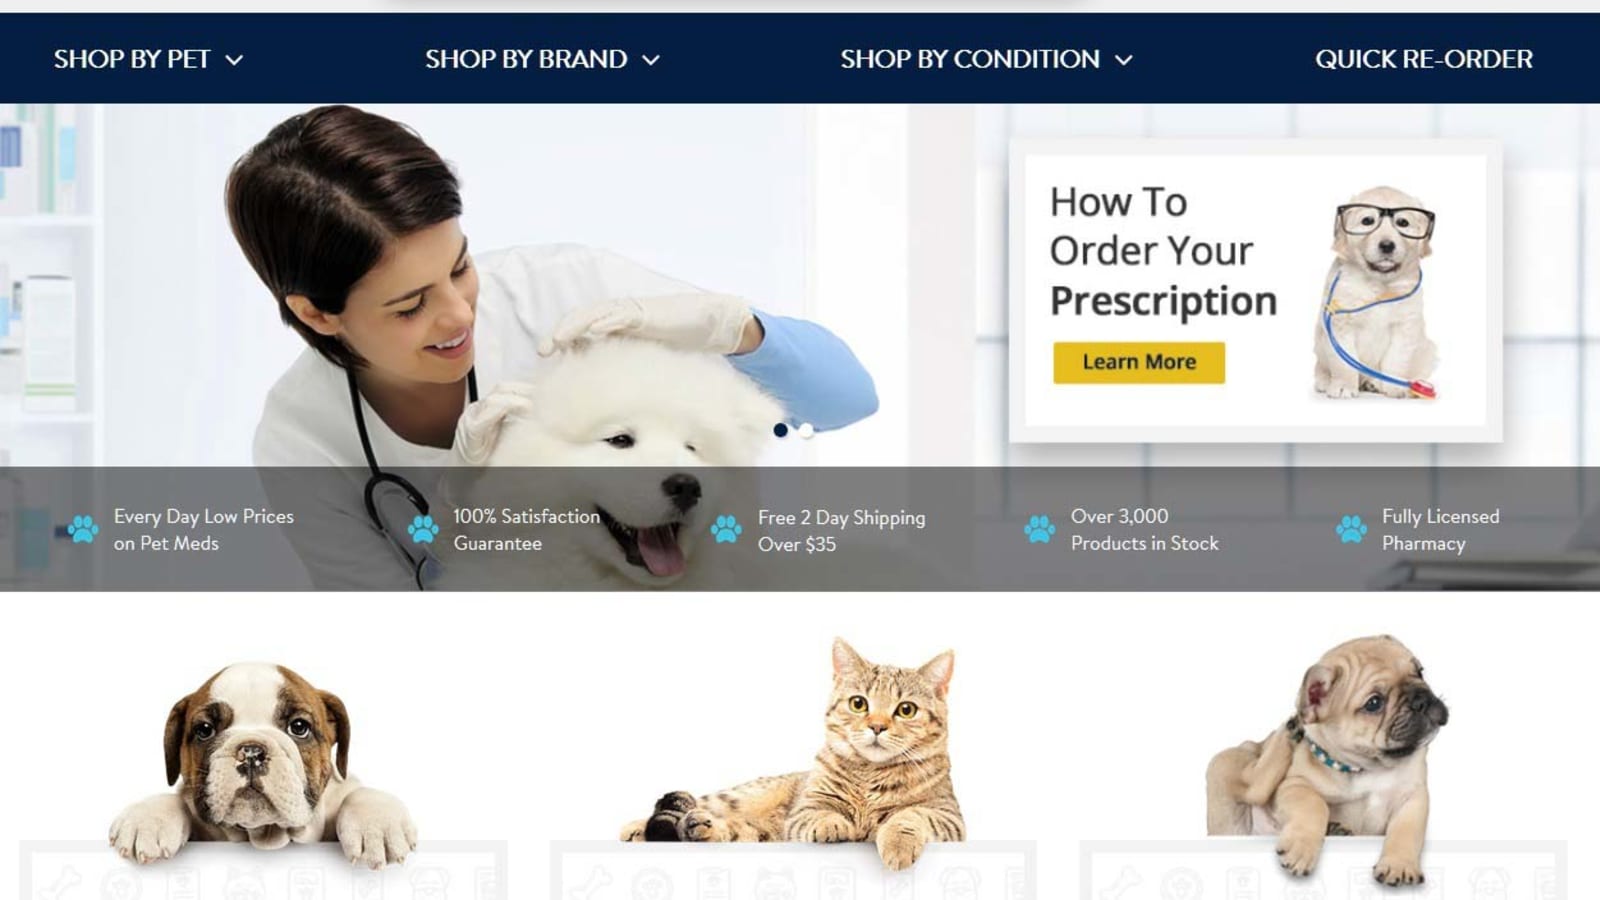 Walmart to open dozens of vet clinics, launch online pet pharmacy